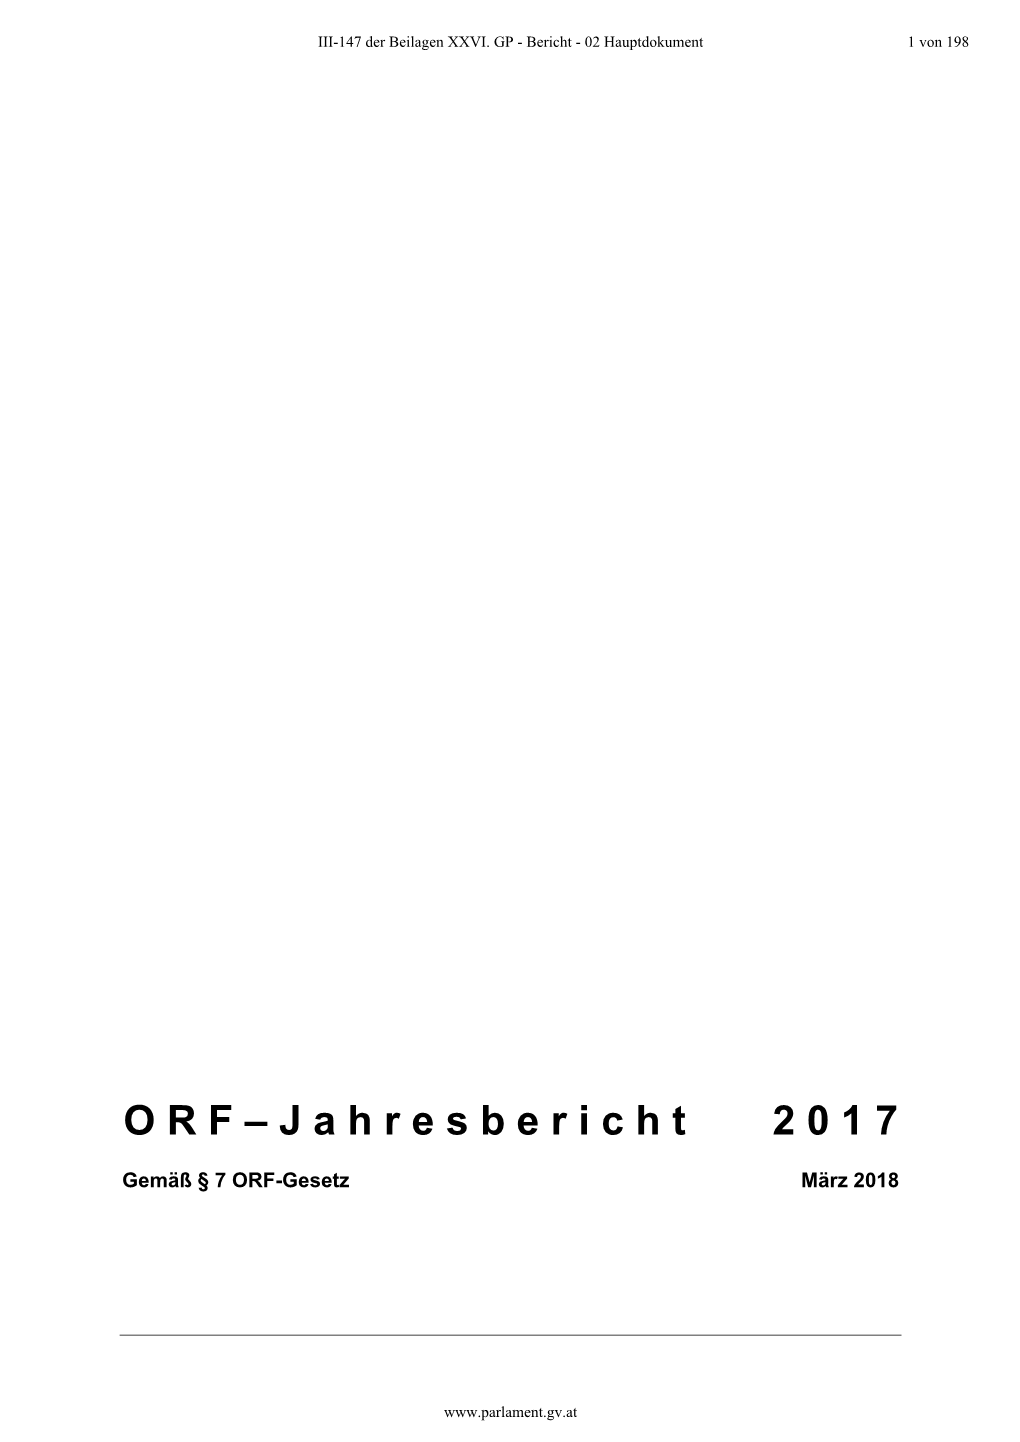 ORF-Gesetz März 2018